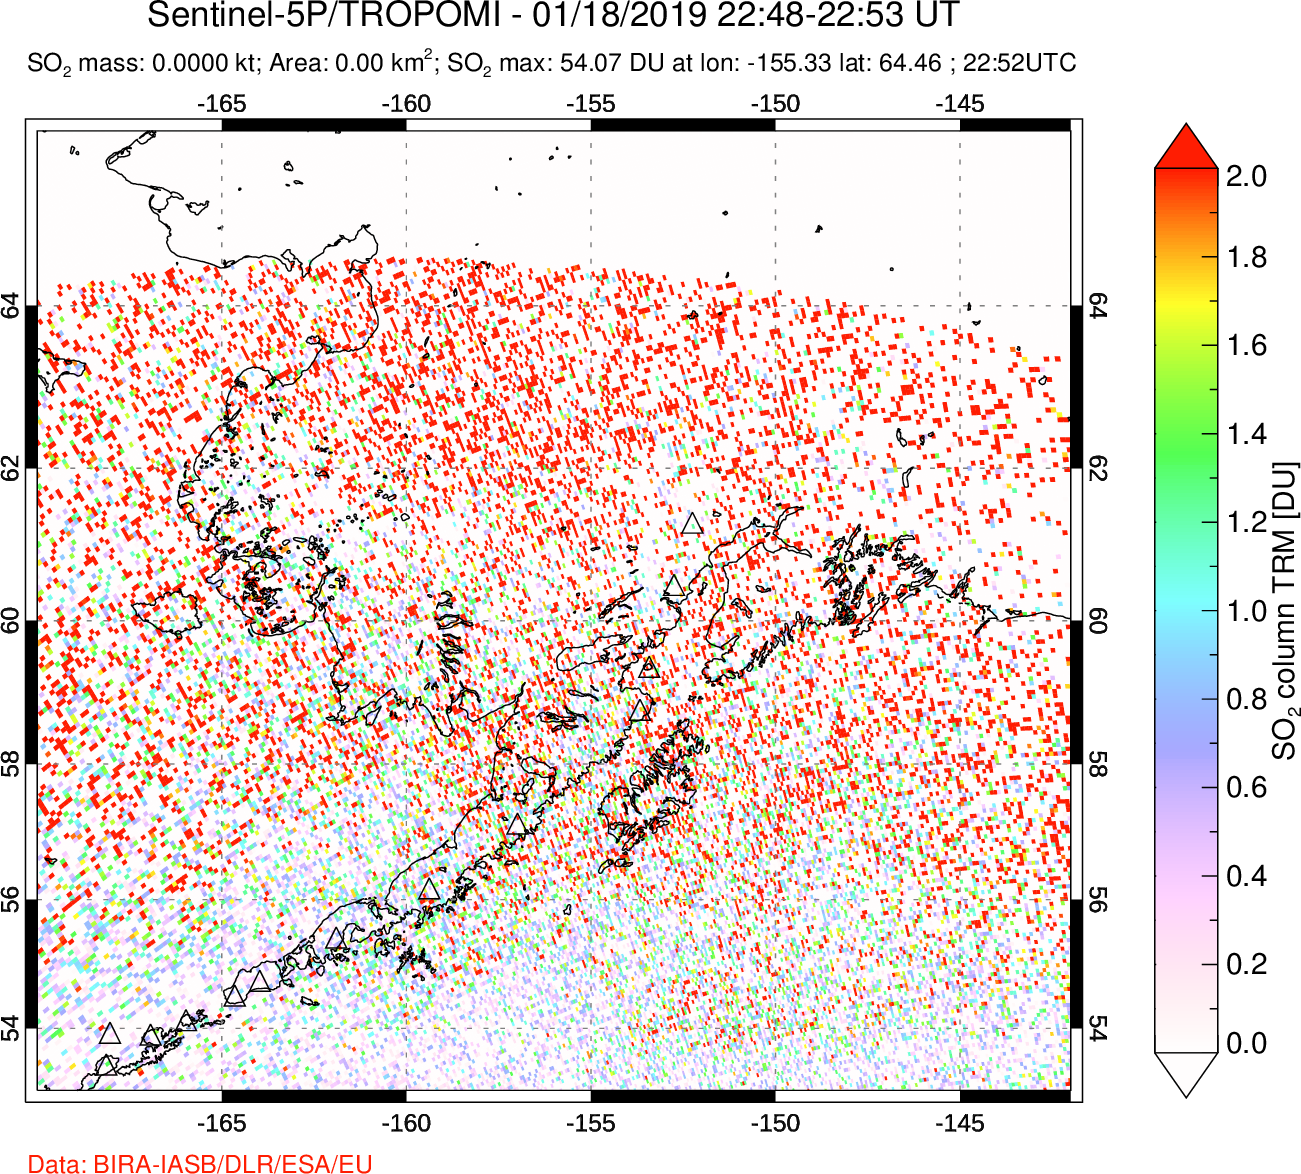 A sulfur dioxide image over Alaska, USA on Jan 18, 2019.